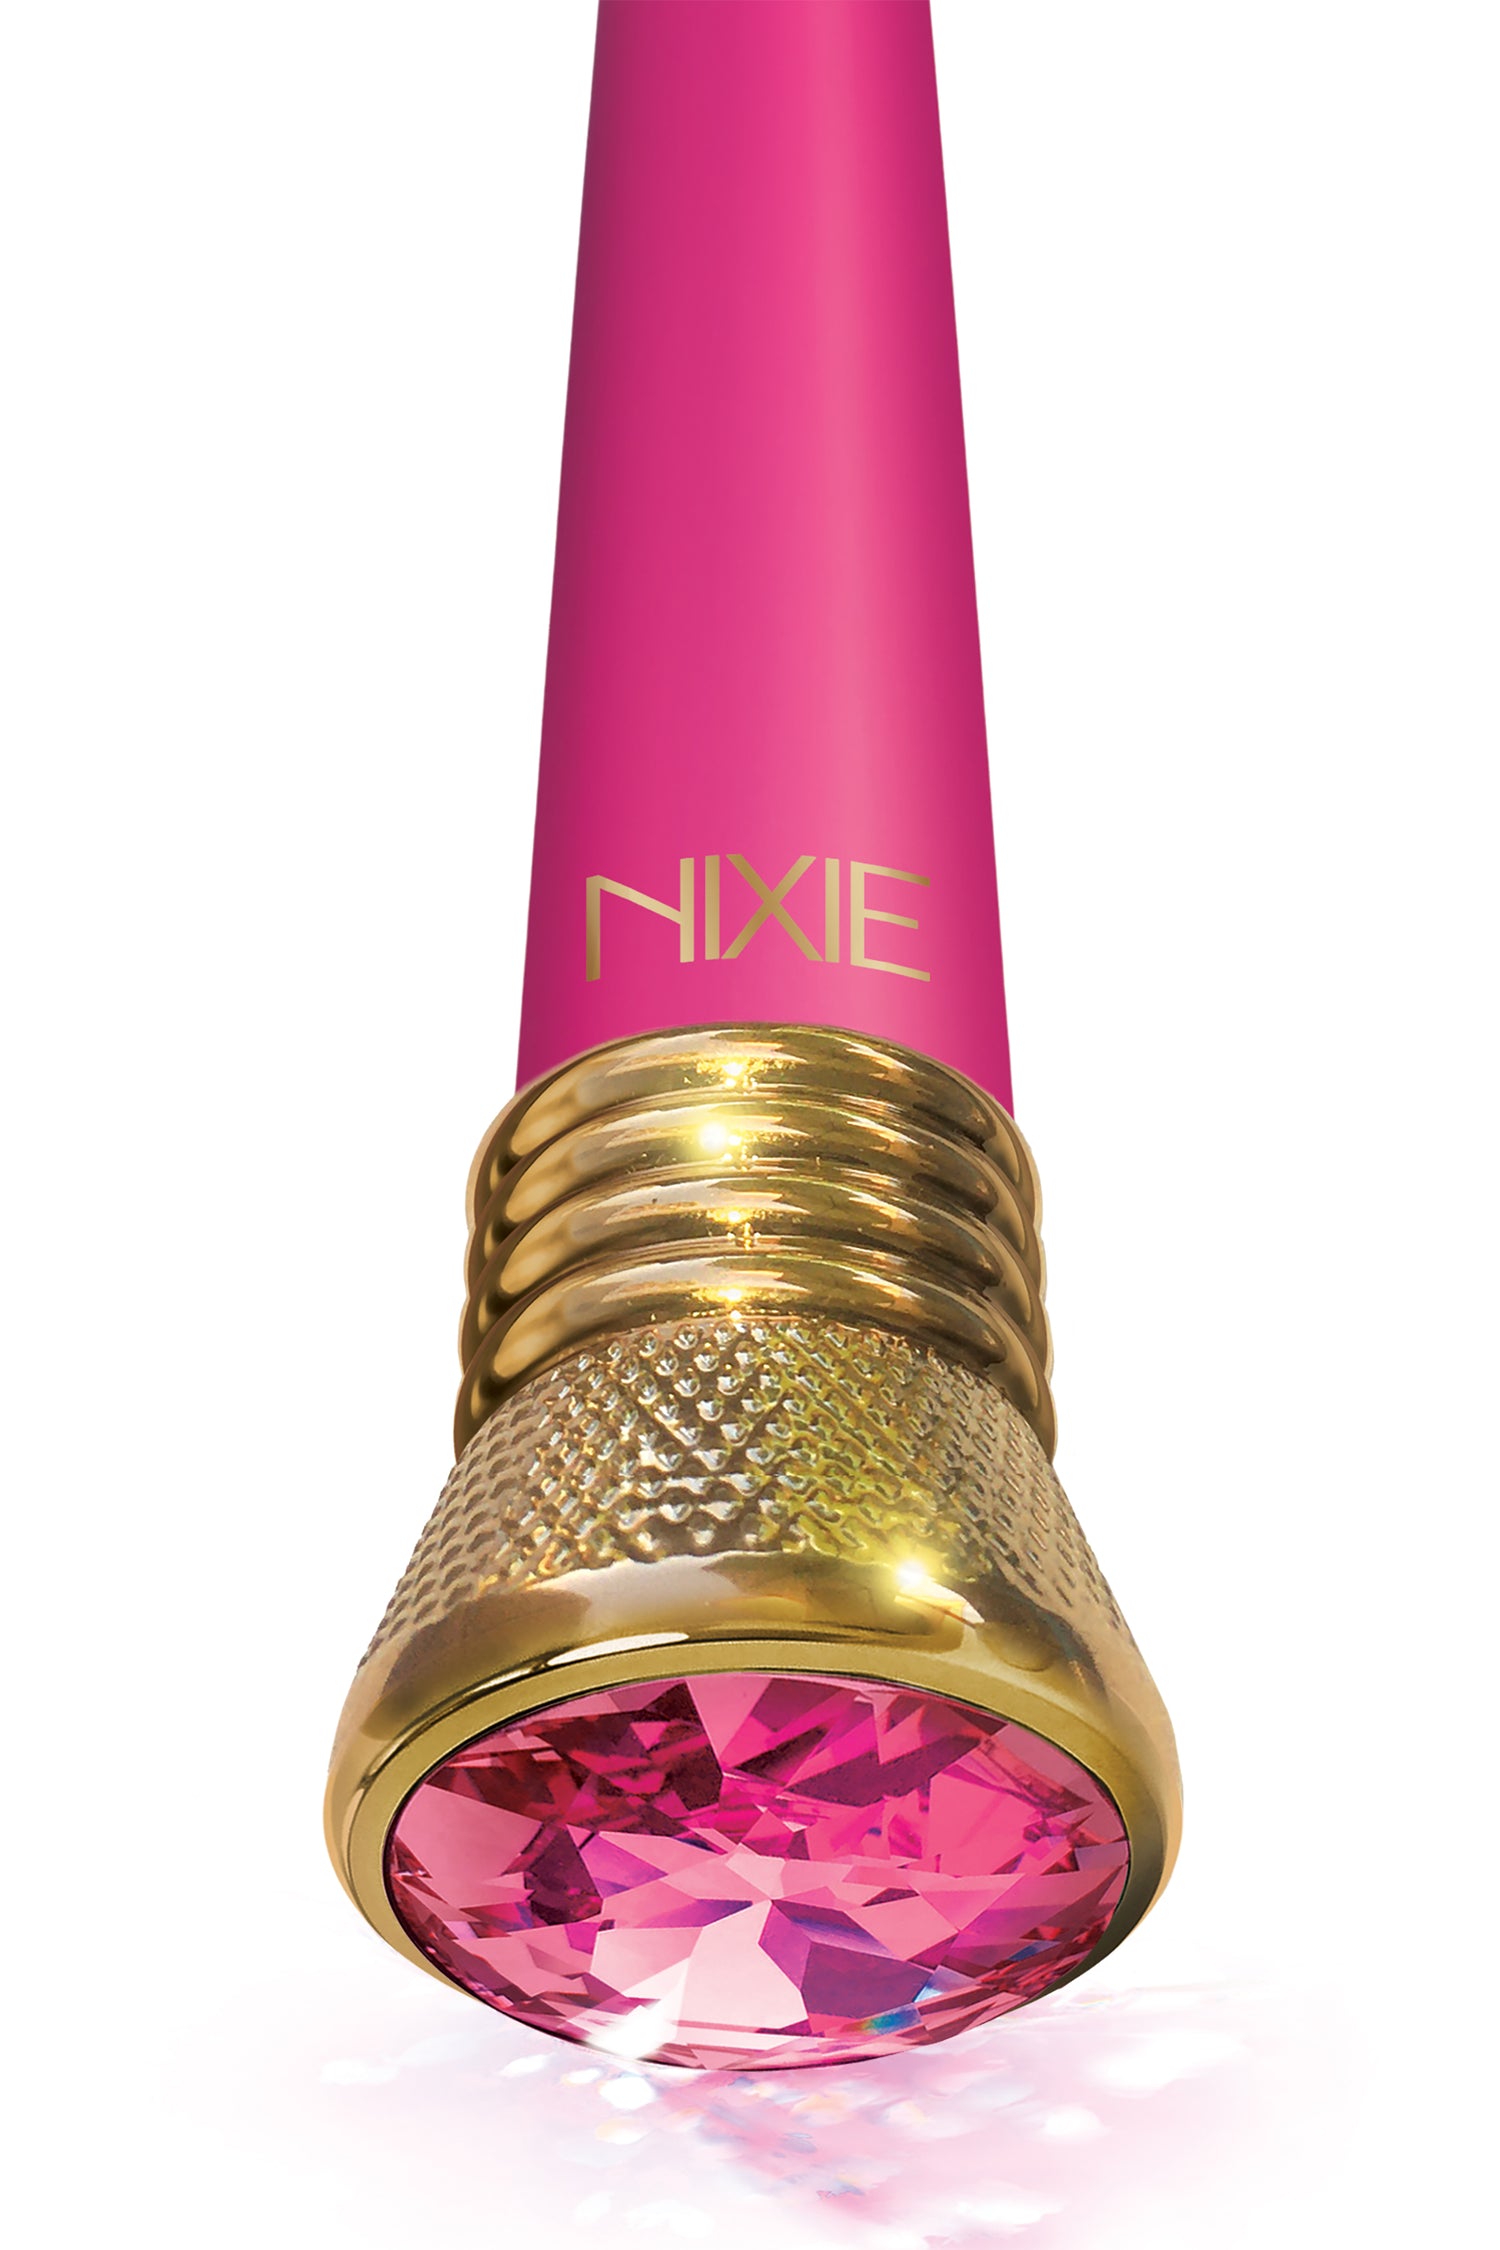 Nixie Jewel Satin G-Spot Vibe Pink Tourmaline